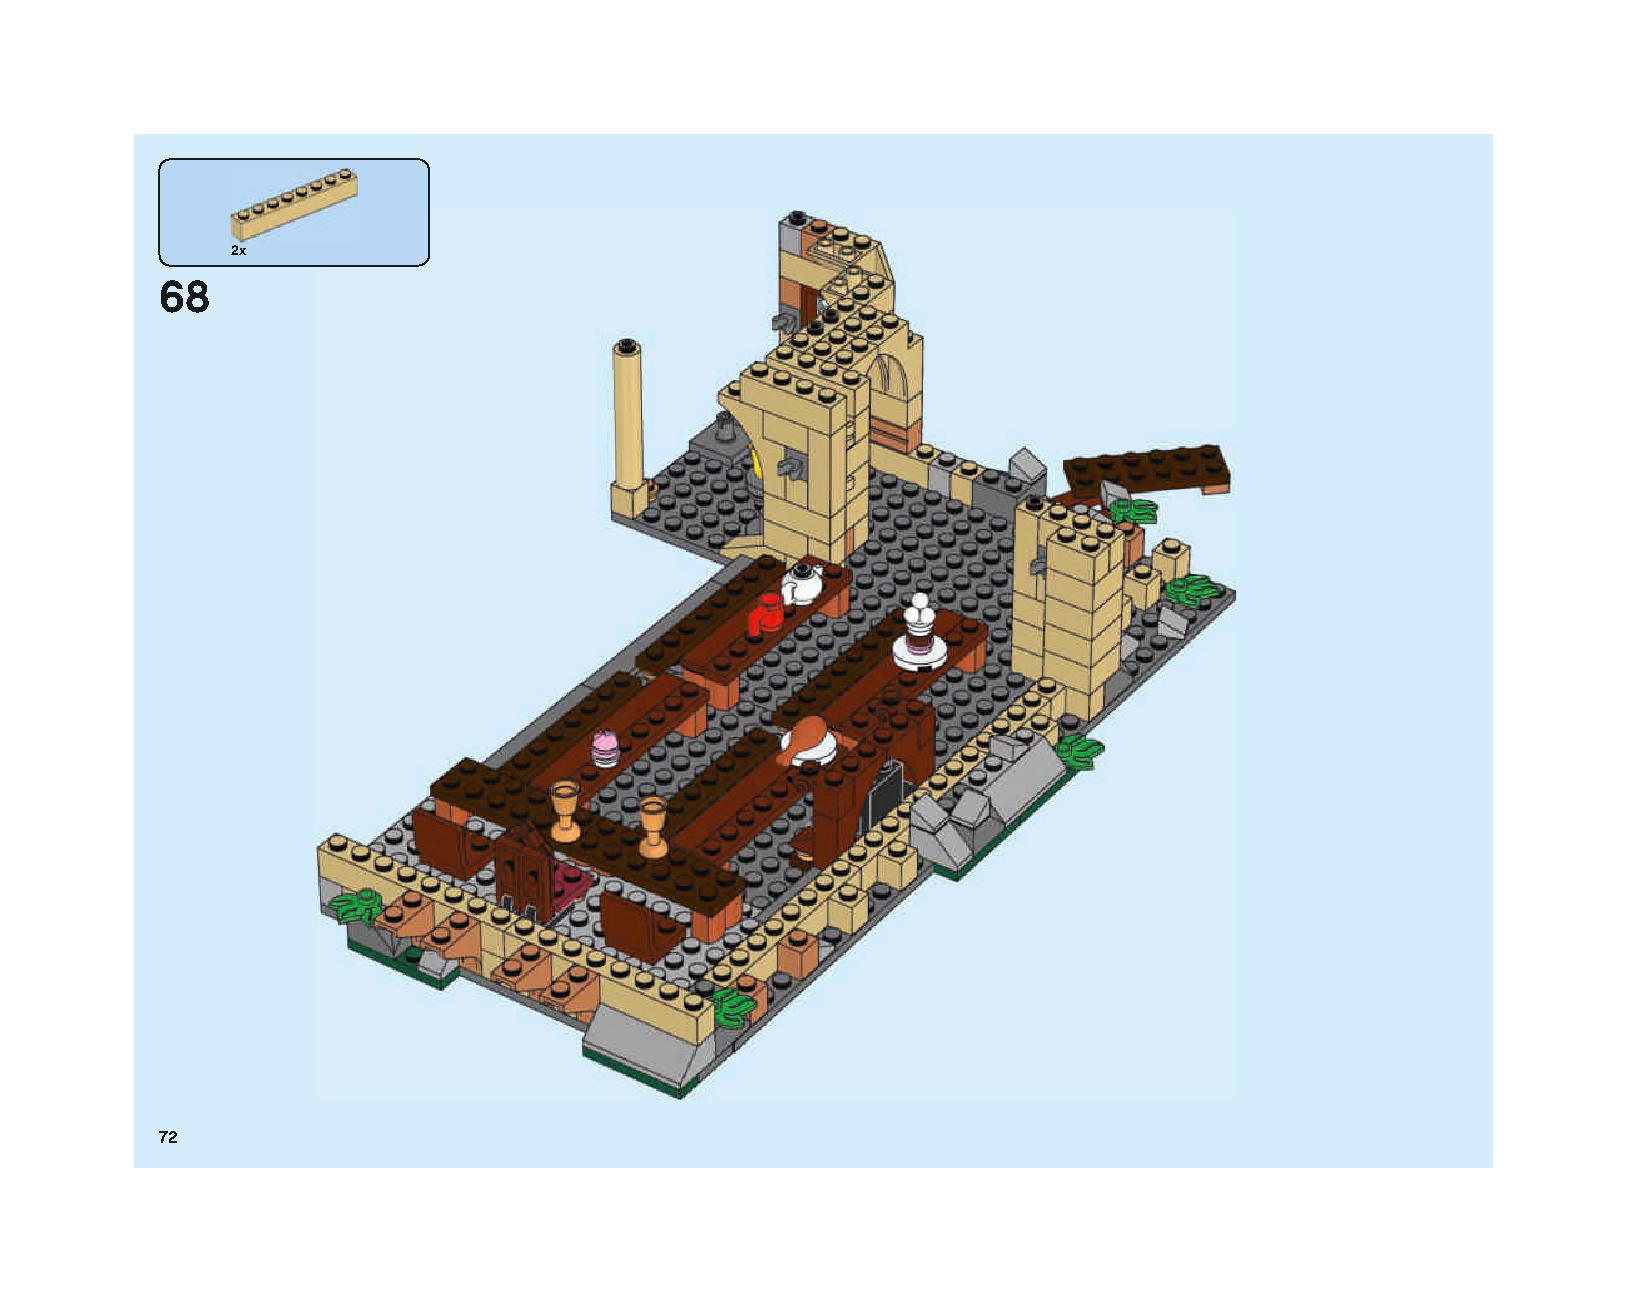 ホグワーツの大広間 75954 レゴの商品情報 レゴの説明書・組立方法 72 page